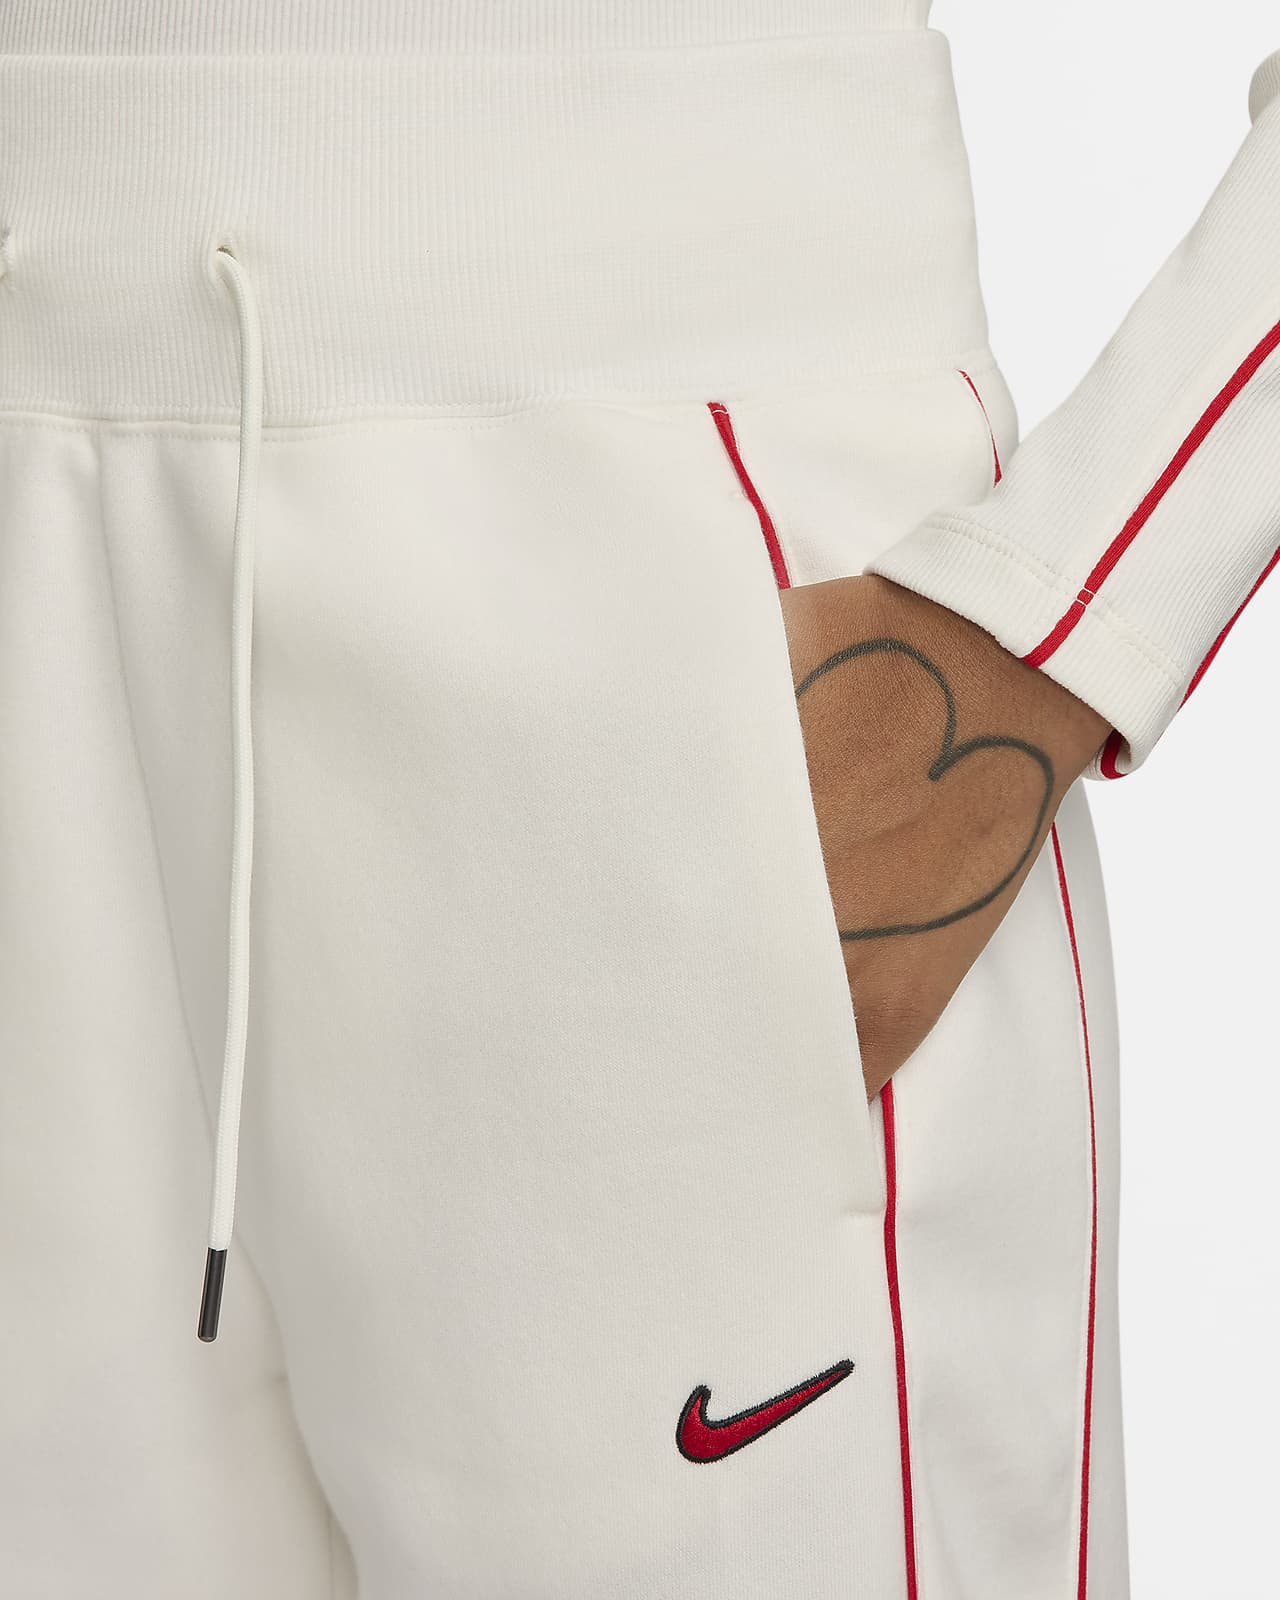 NWT Nike Women's Sportswear Phoenix Fleece High-Waisted Pants Size